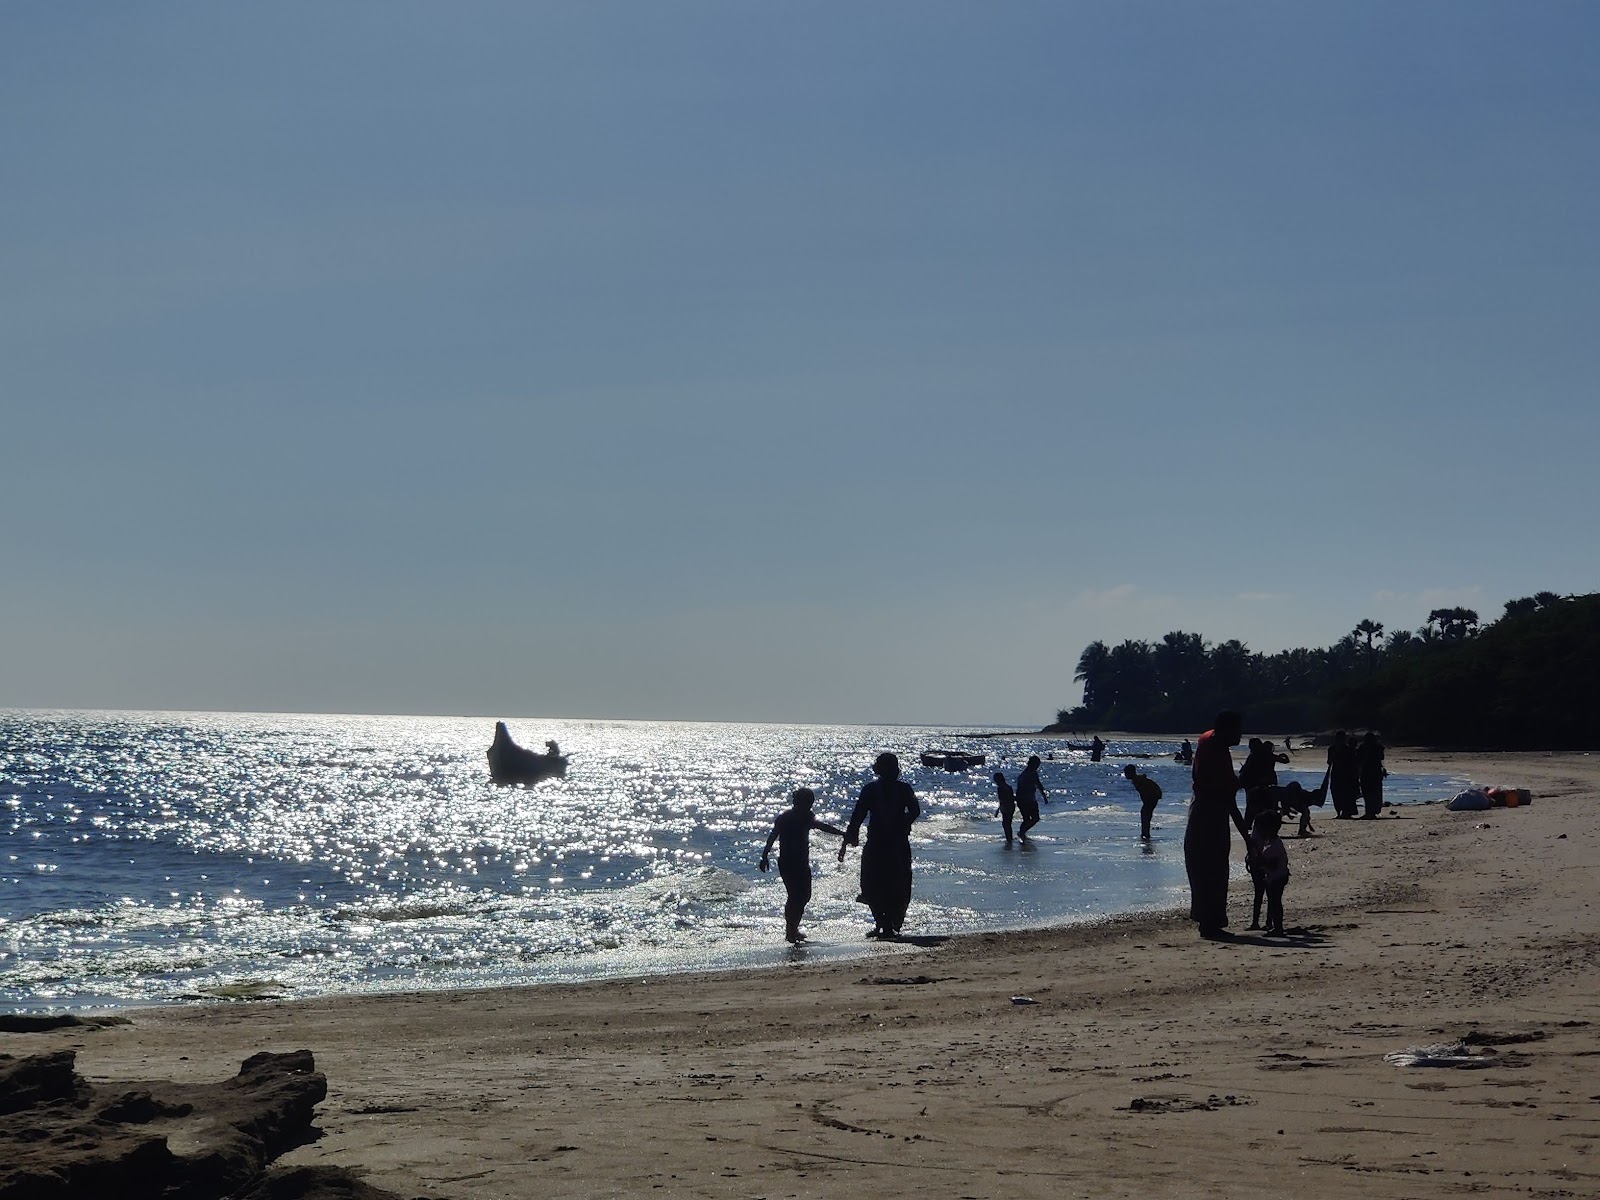 Photo de Pakkirapa Sea Park Beach - endroit populaire parmi les connaisseurs de la détente